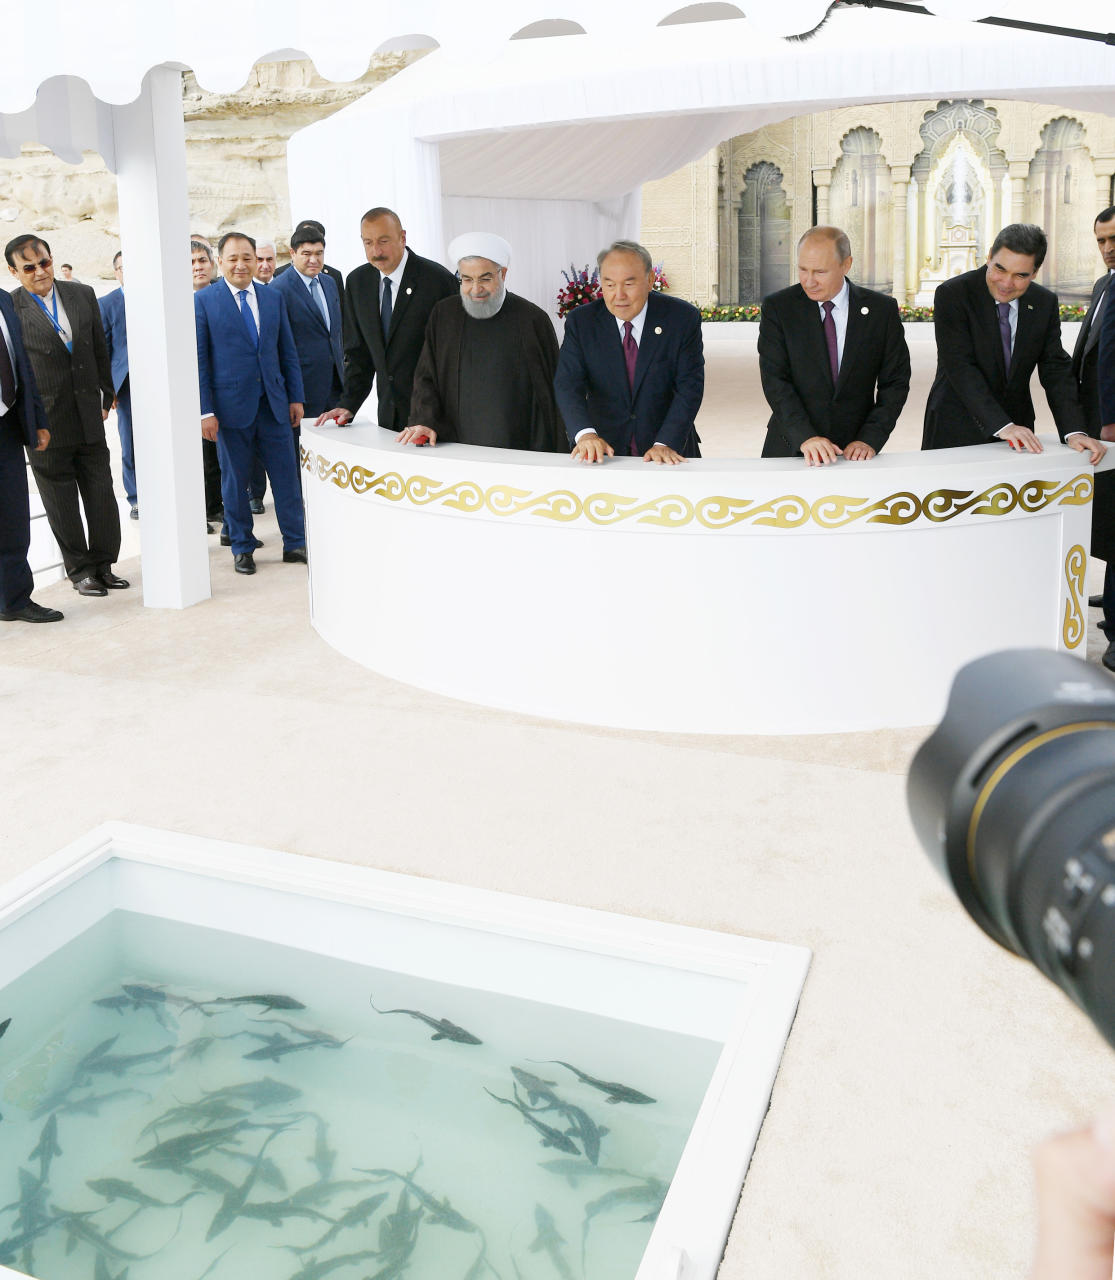 Главы государств в Актау приняли участие в церемонии выпуска молоди осетра в Каспийское море